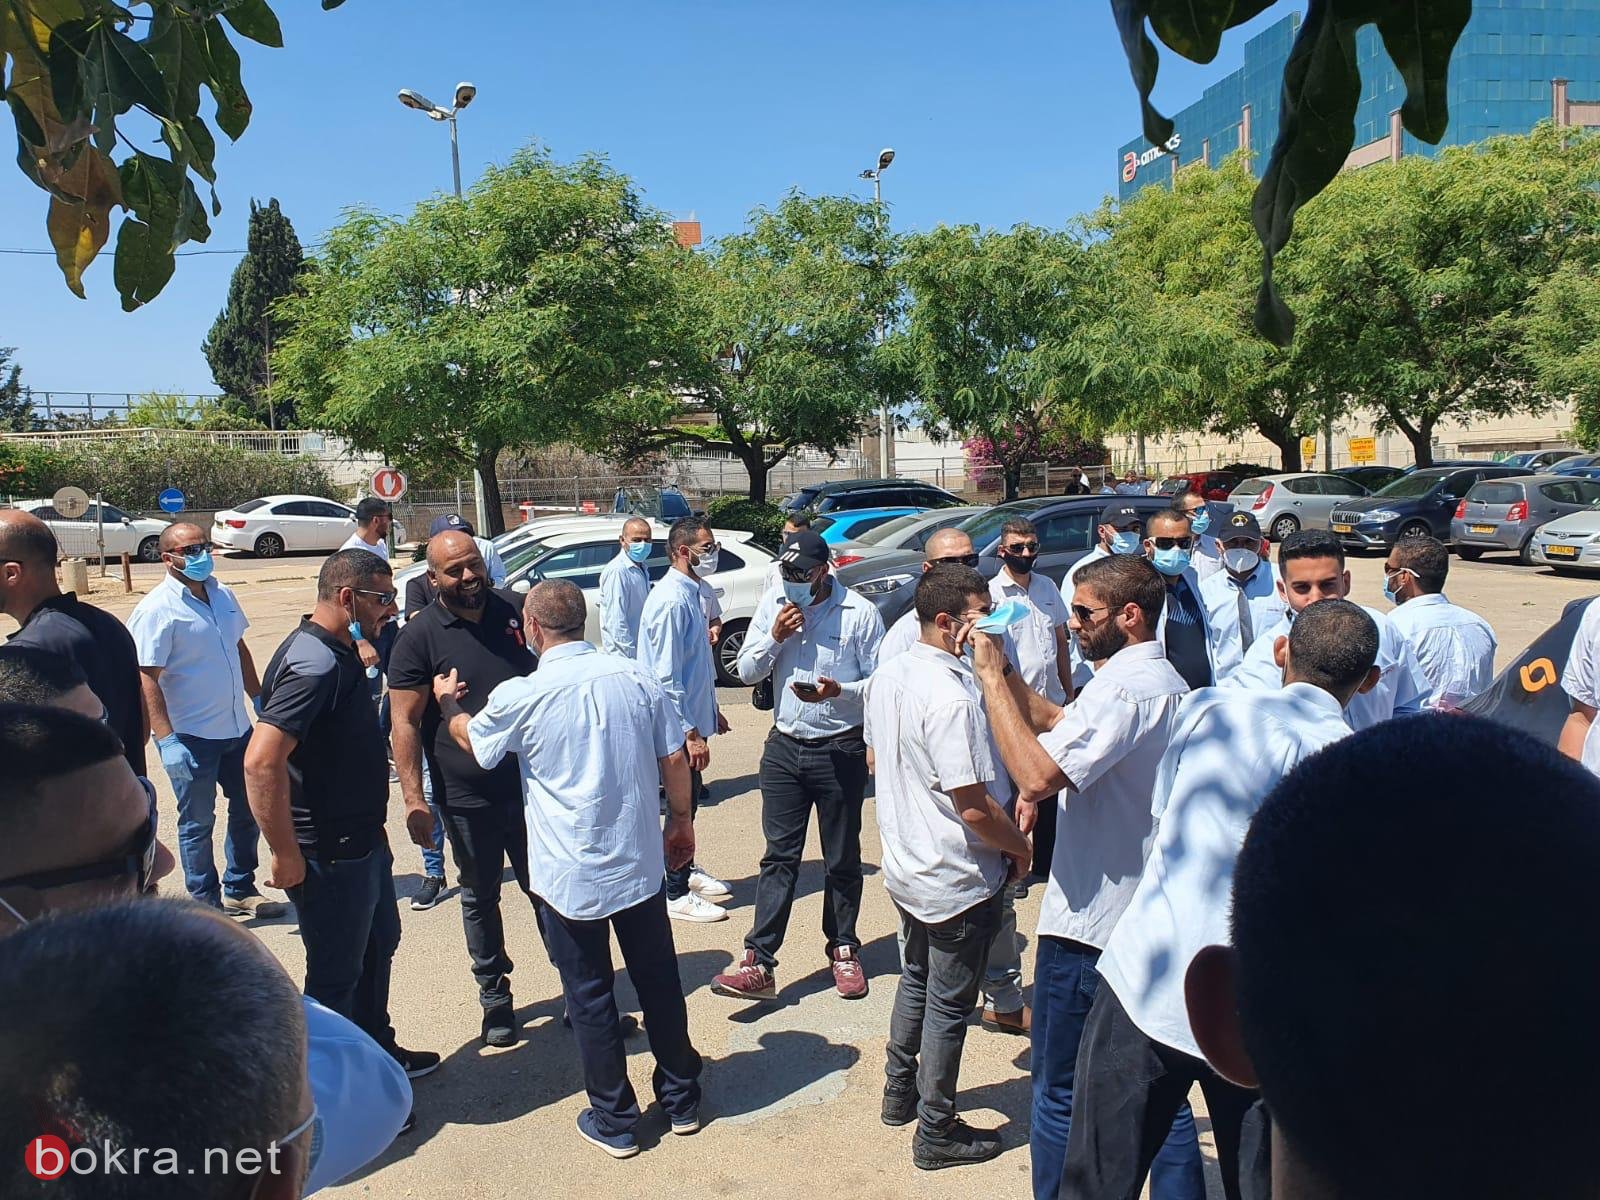 سائقو شركة "متروبولين" العرب يتظاهرون أمام مكاتب الشرطة اعتراضًا على الشروط المجحفة-2